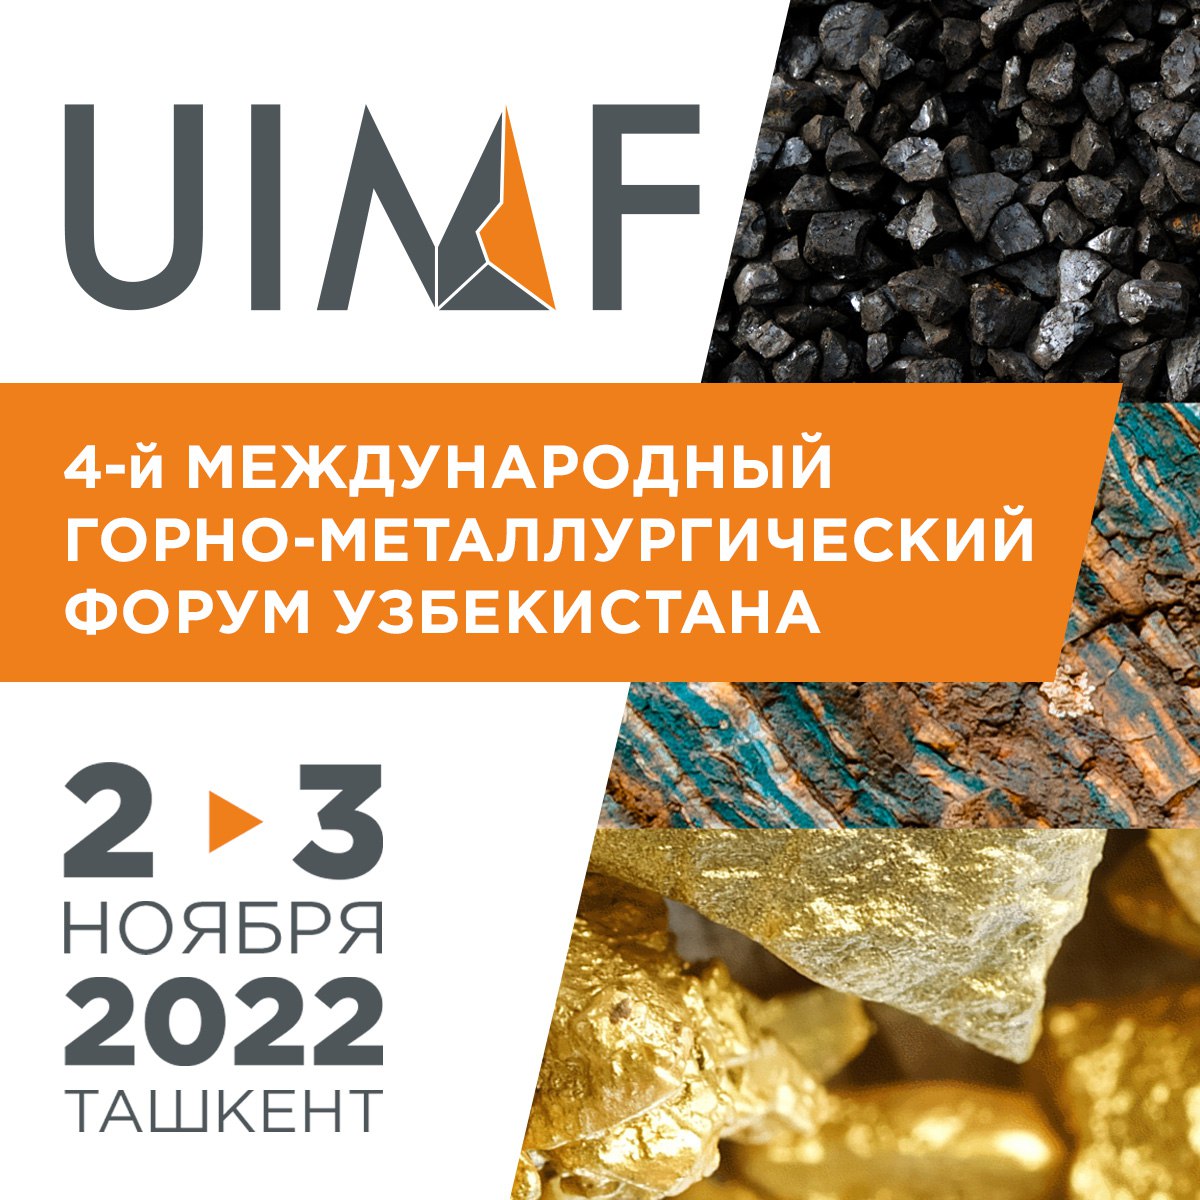 Плакат международного горно-металлургического форума UIMF 2022